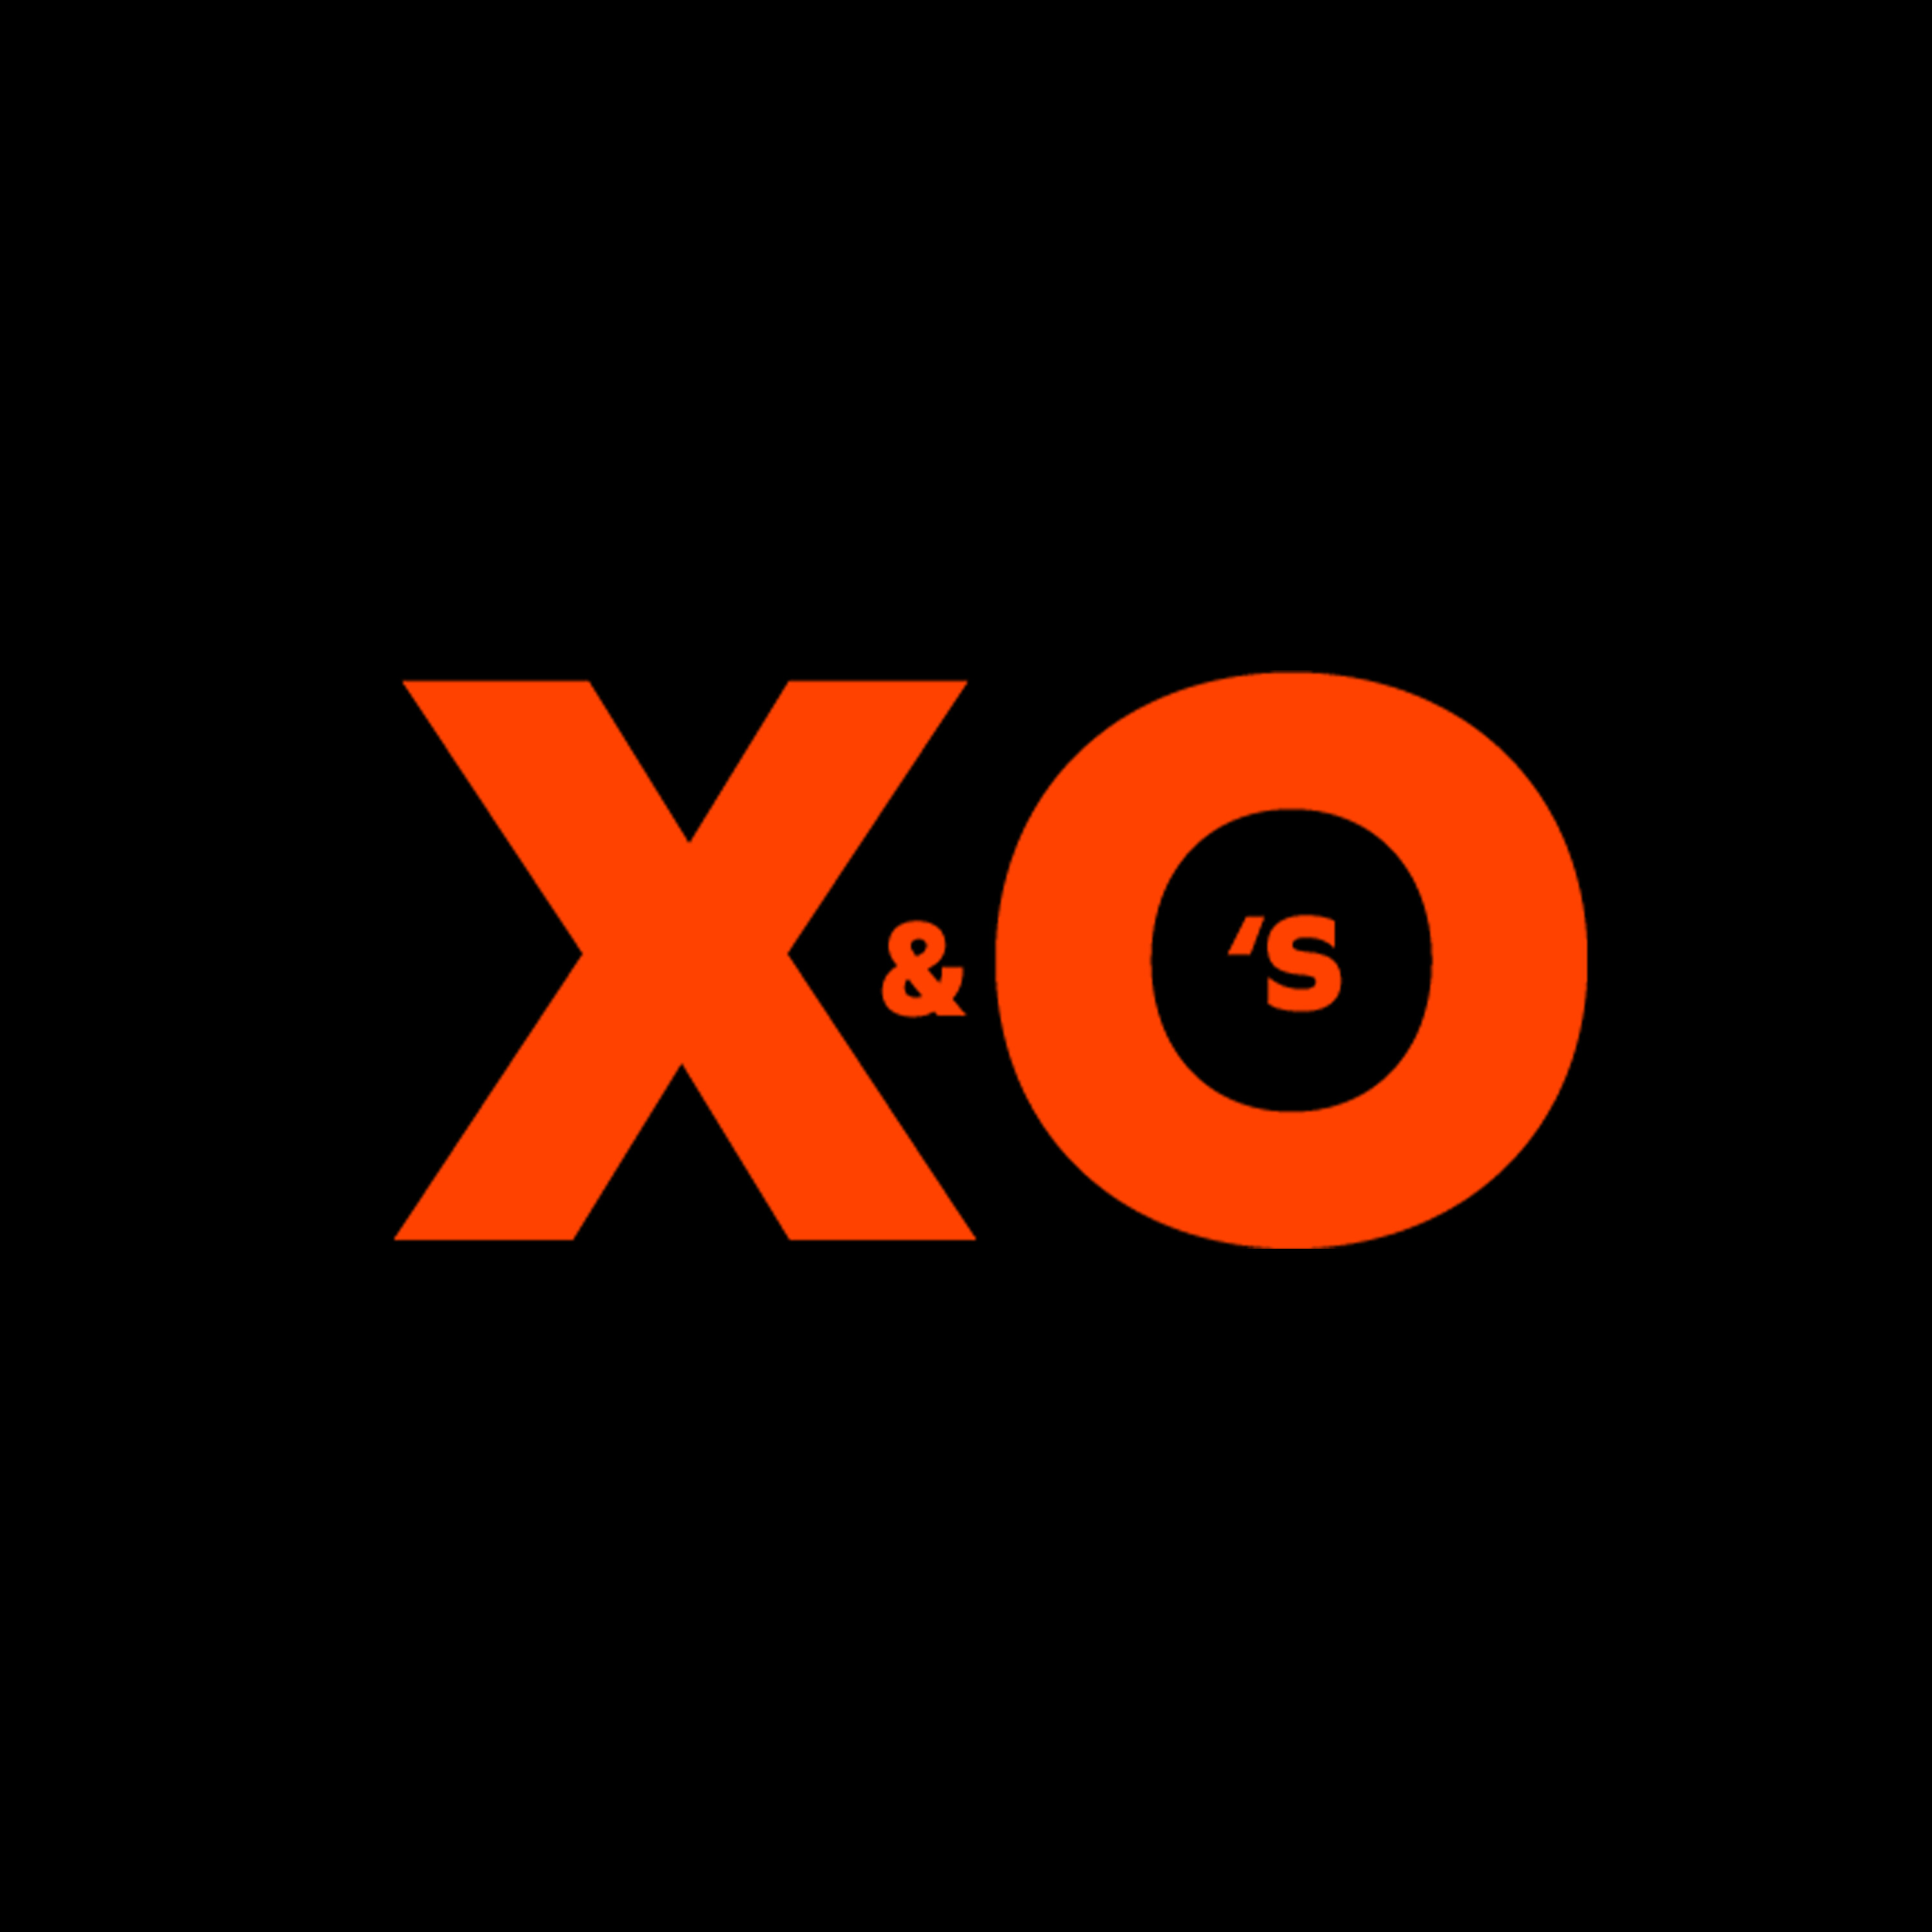 X&O's - We got next (met de broertjes Hodge)